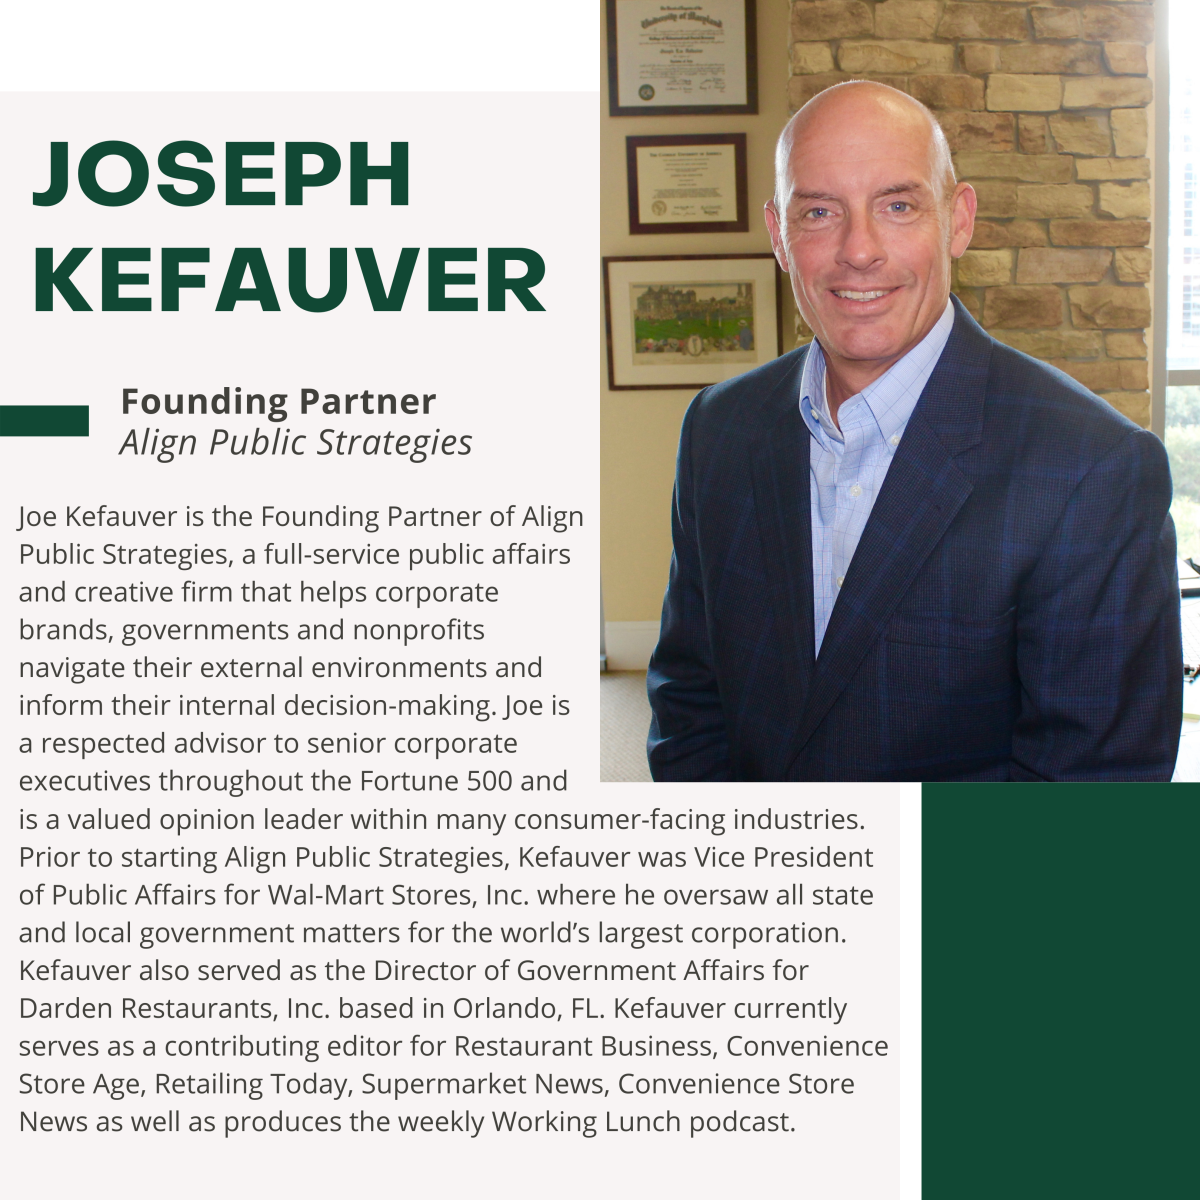 Joe Kefauver